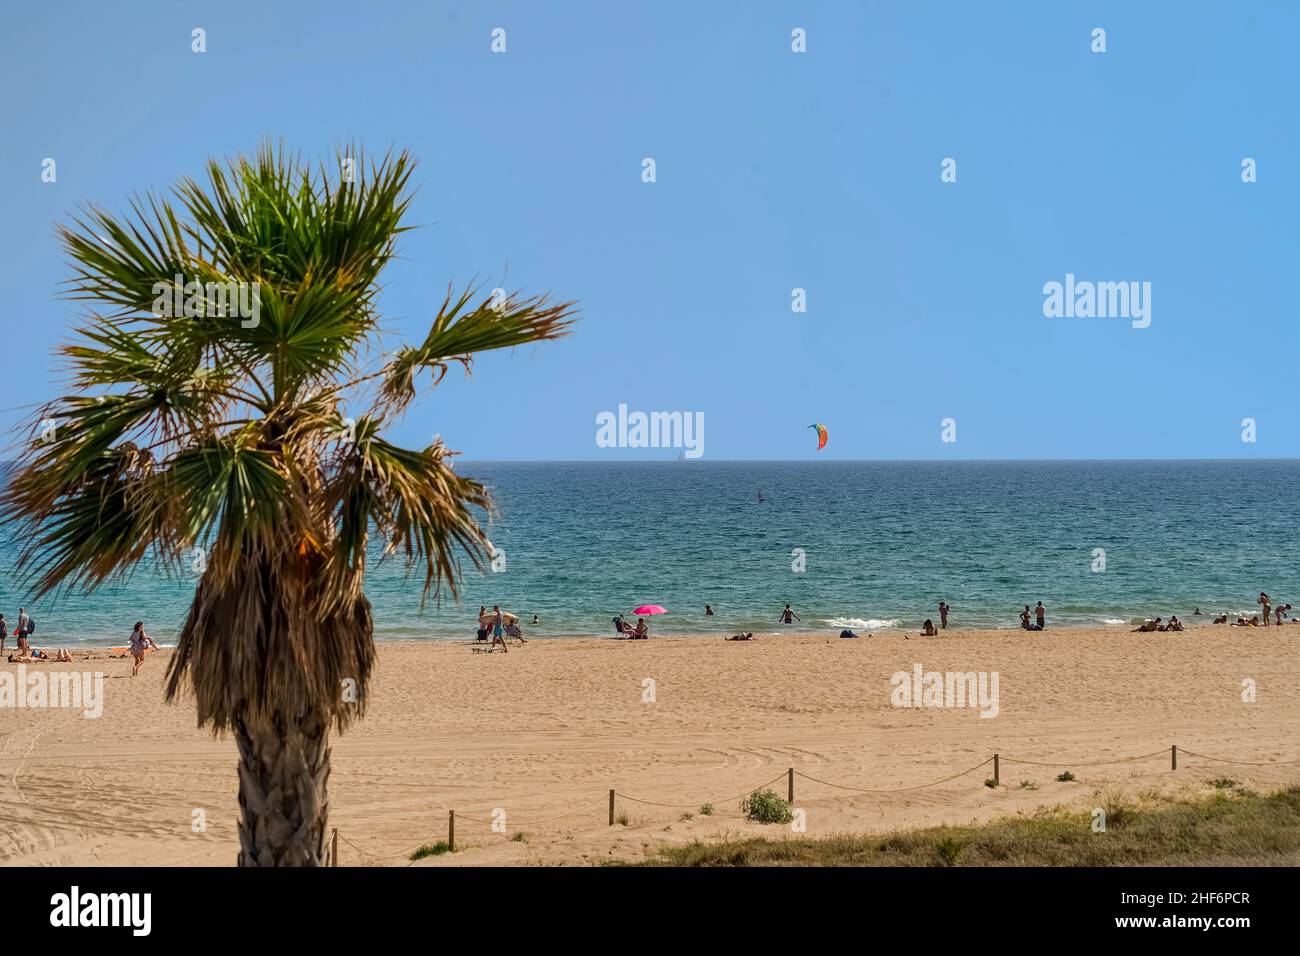 Der schöne, sommerliche Strandblick mit Menschen im Hintergrund und einer Palme im Vordergrund mit einem Kite-Surfer Stockfoto